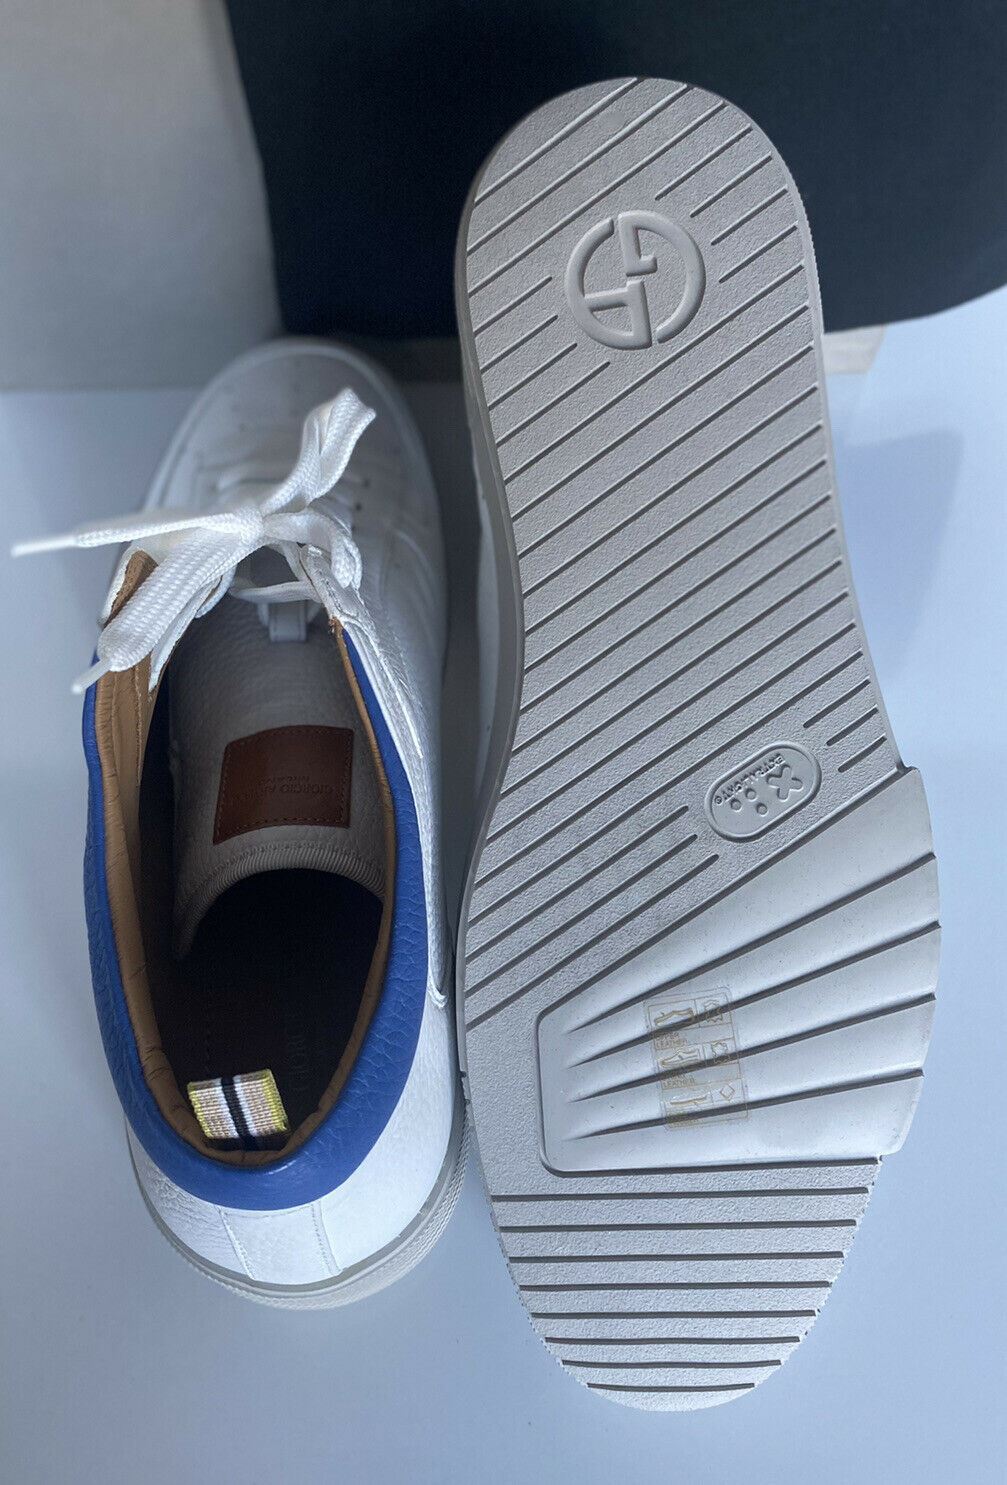 NIB $875 Weiße HighTop-Sneaker von Giorgio Armani für Herren 8,5 US (41,5 Euro) X2Z020 